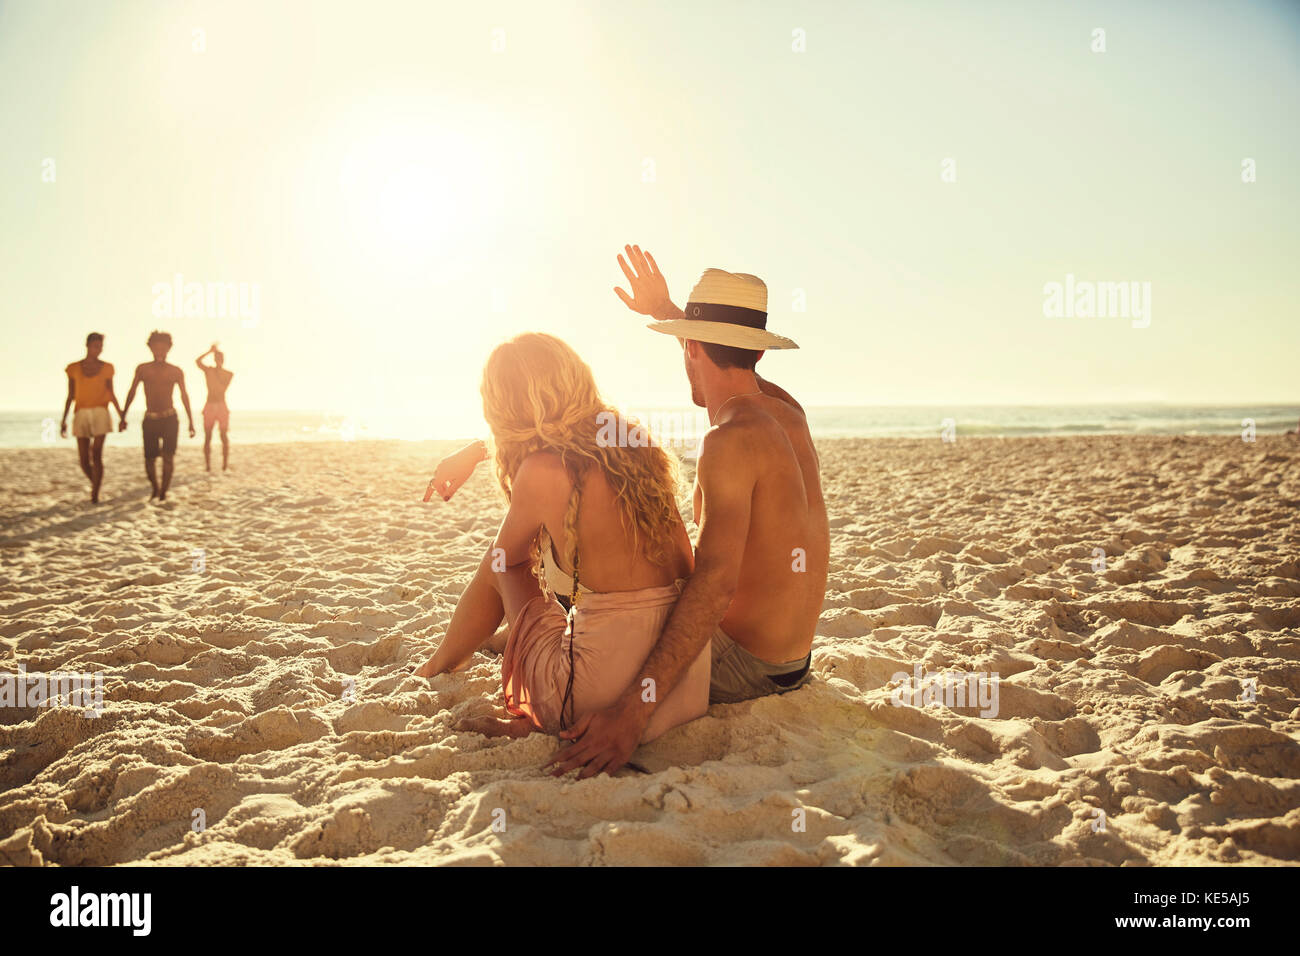 Un jeune couple se fait passer entre amis sur une plage ensoleillée d'été Banque D'Images